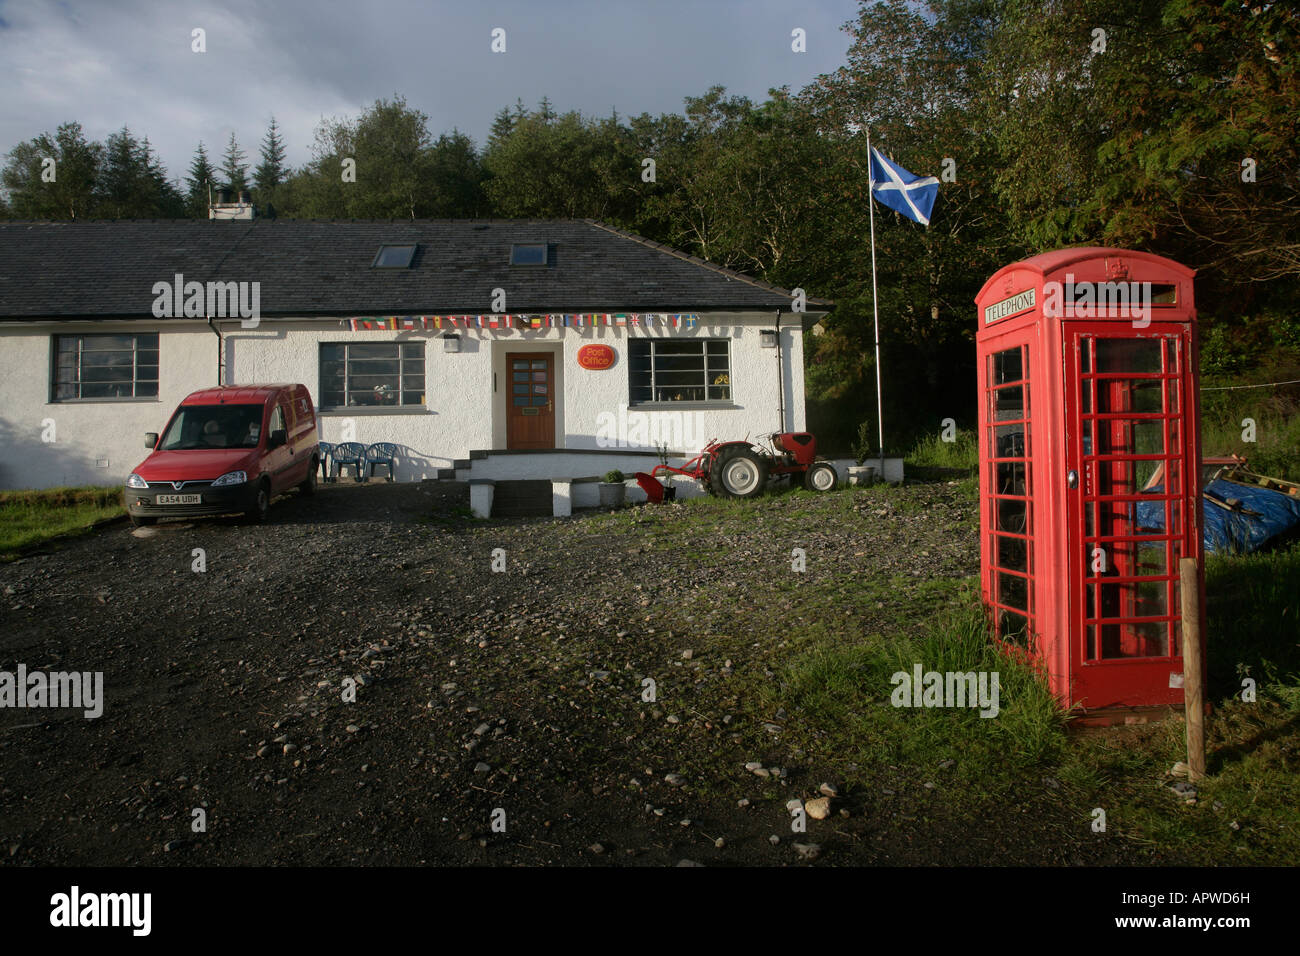 Oficina de correos en la aldea INVERIE KNOYDART,Highlands, Escocia, UK Foto de stock